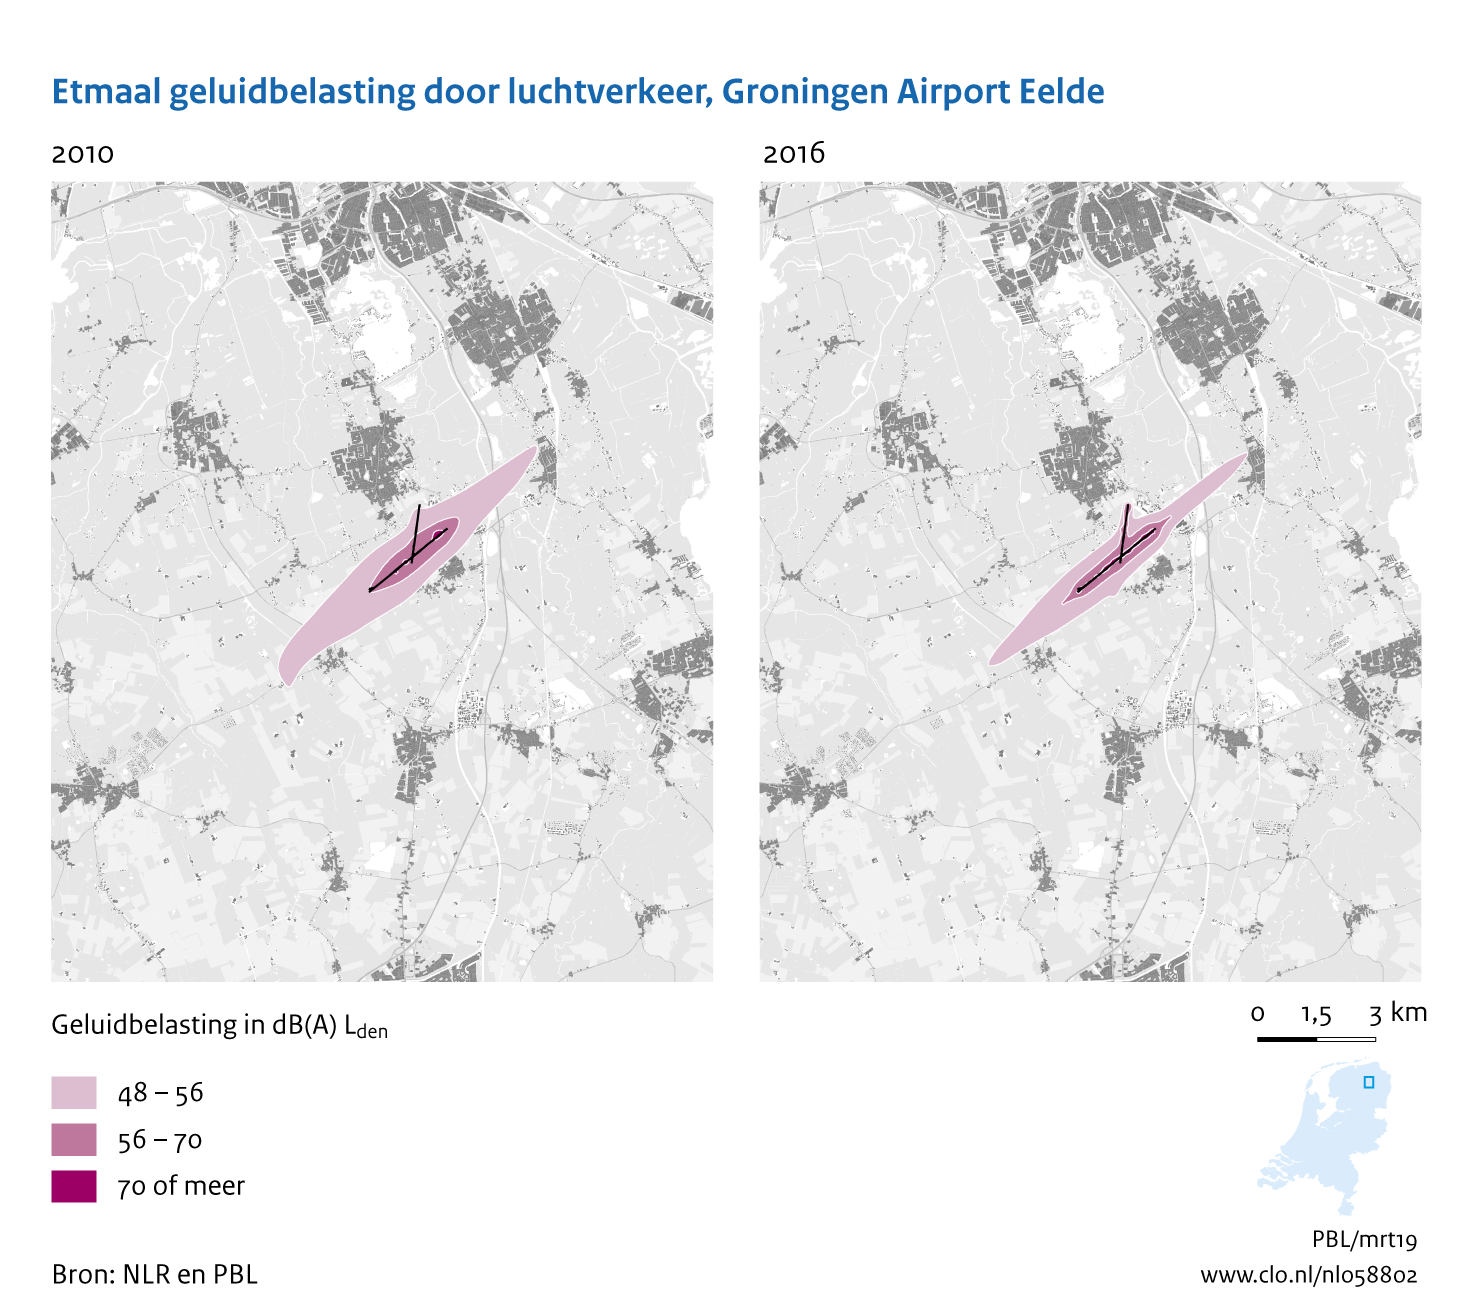 Figuur Etmaal geluidbelasting door luchtvaart, Groningen Airport Eelde, 2010-2016. In de rest van de tekst wordt deze figuur uitgebreider uitgelegd.